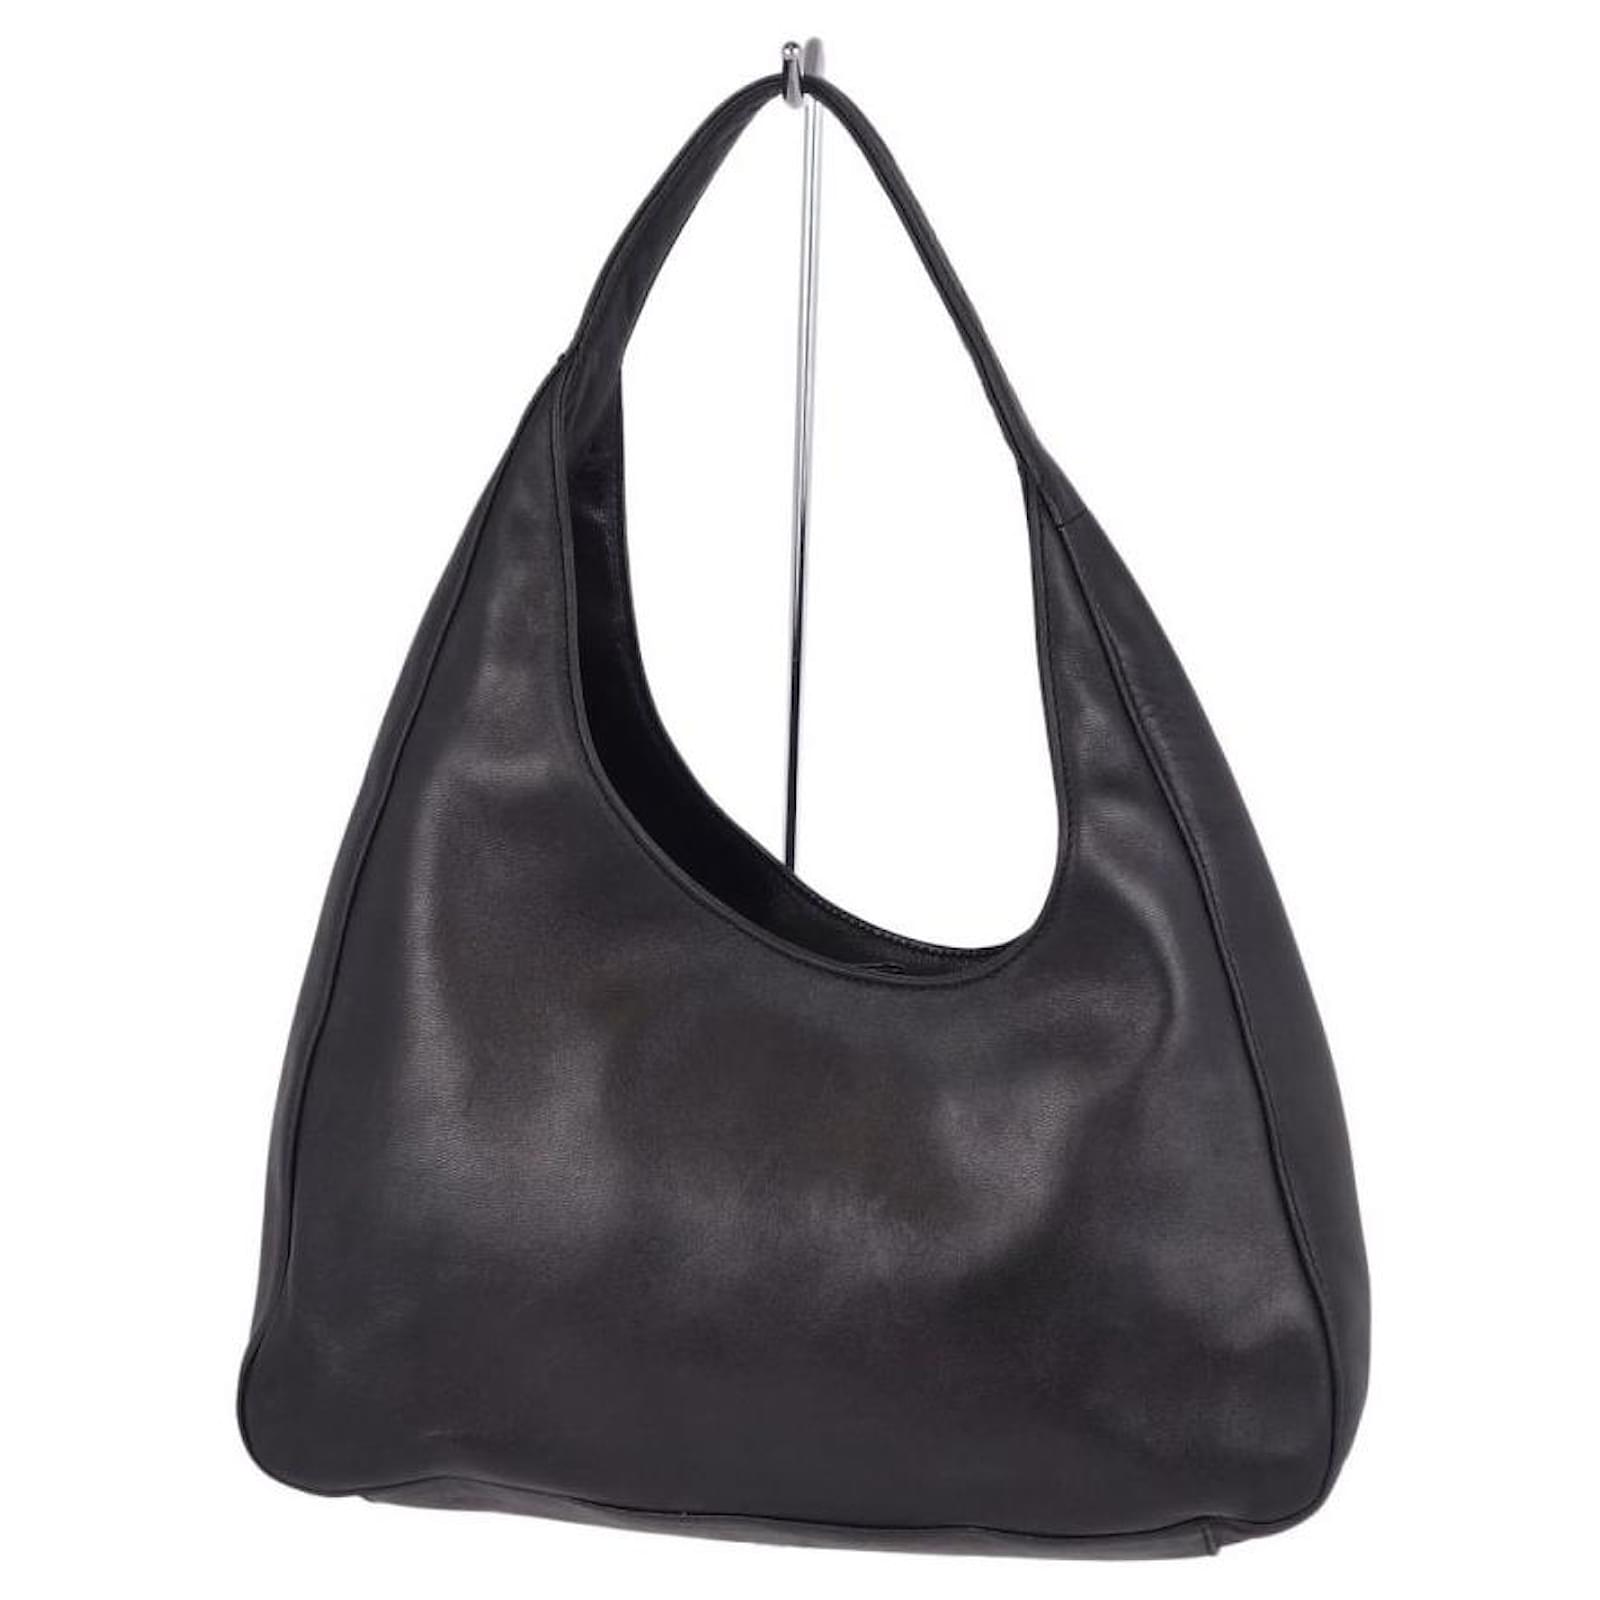 Used PRADA Prada handbag shoulder bag leather ivory white BL0639 -  Walmart.com